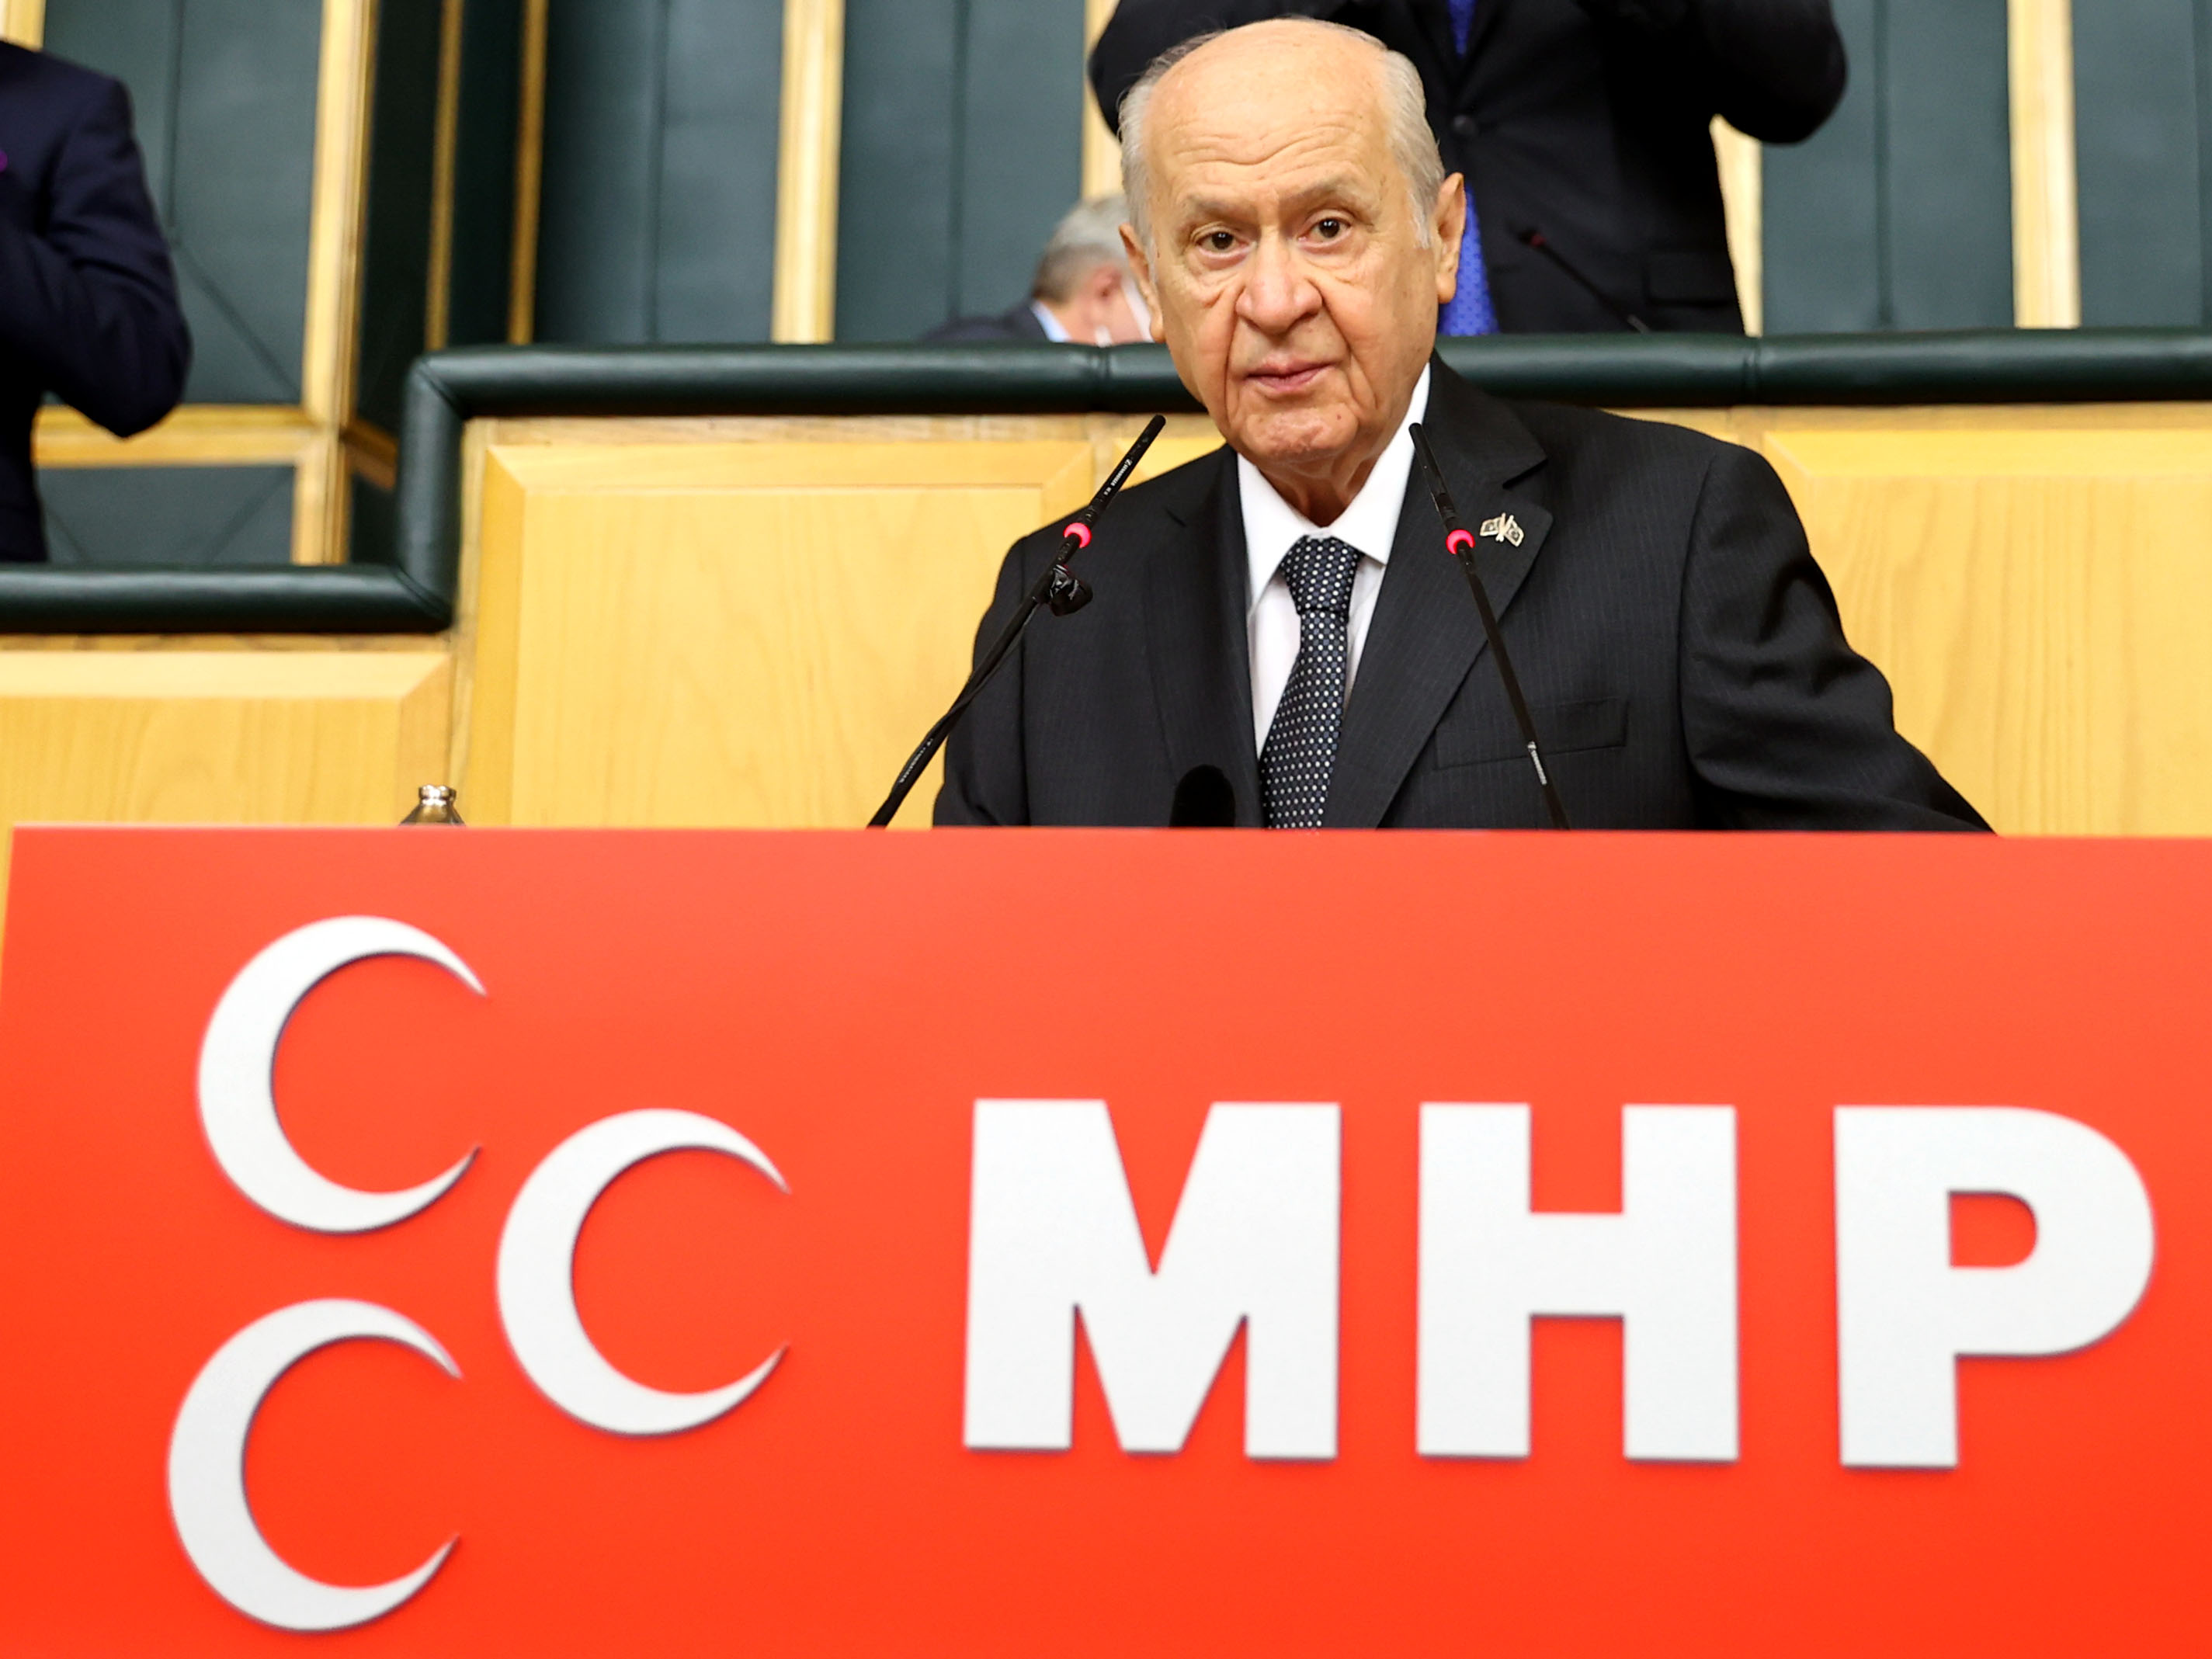 Son dakika | MHP lideri Devlet Bahçeli, Kılıçdaroğlu'na seslendi: Erken seçim, haydi seçim, hemen seçim yoktur, buna alışman tavsiyemdir